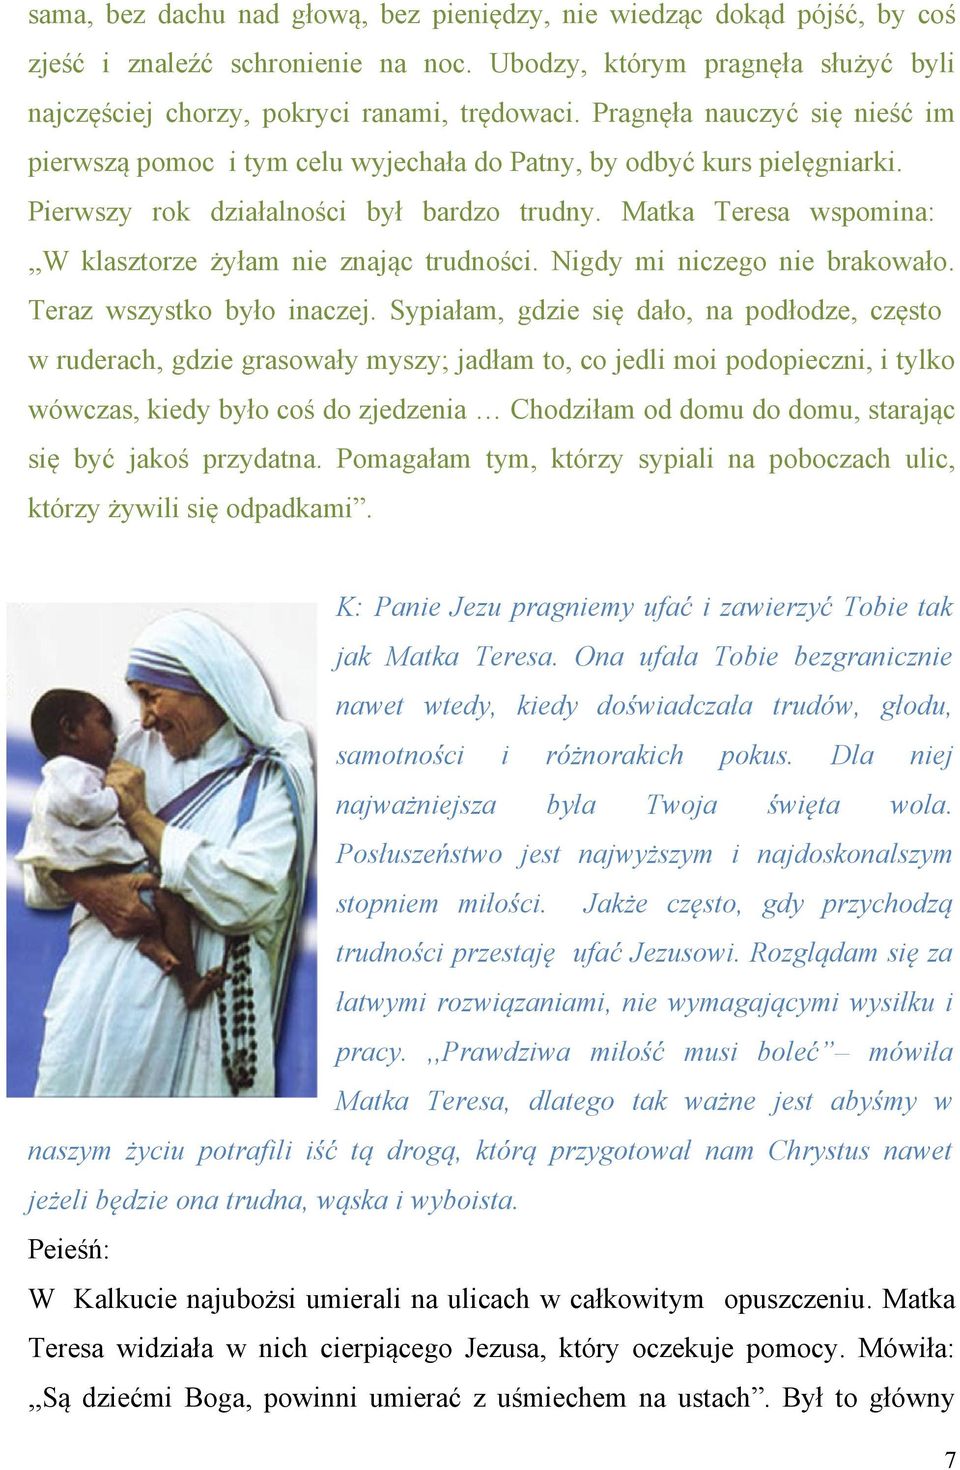 Matka Teresa wspomina:,,w klasztorze żyłam nie znając trudności. Nigdy mi niczego nie brakowało. Teraz wszystko było inaczej.